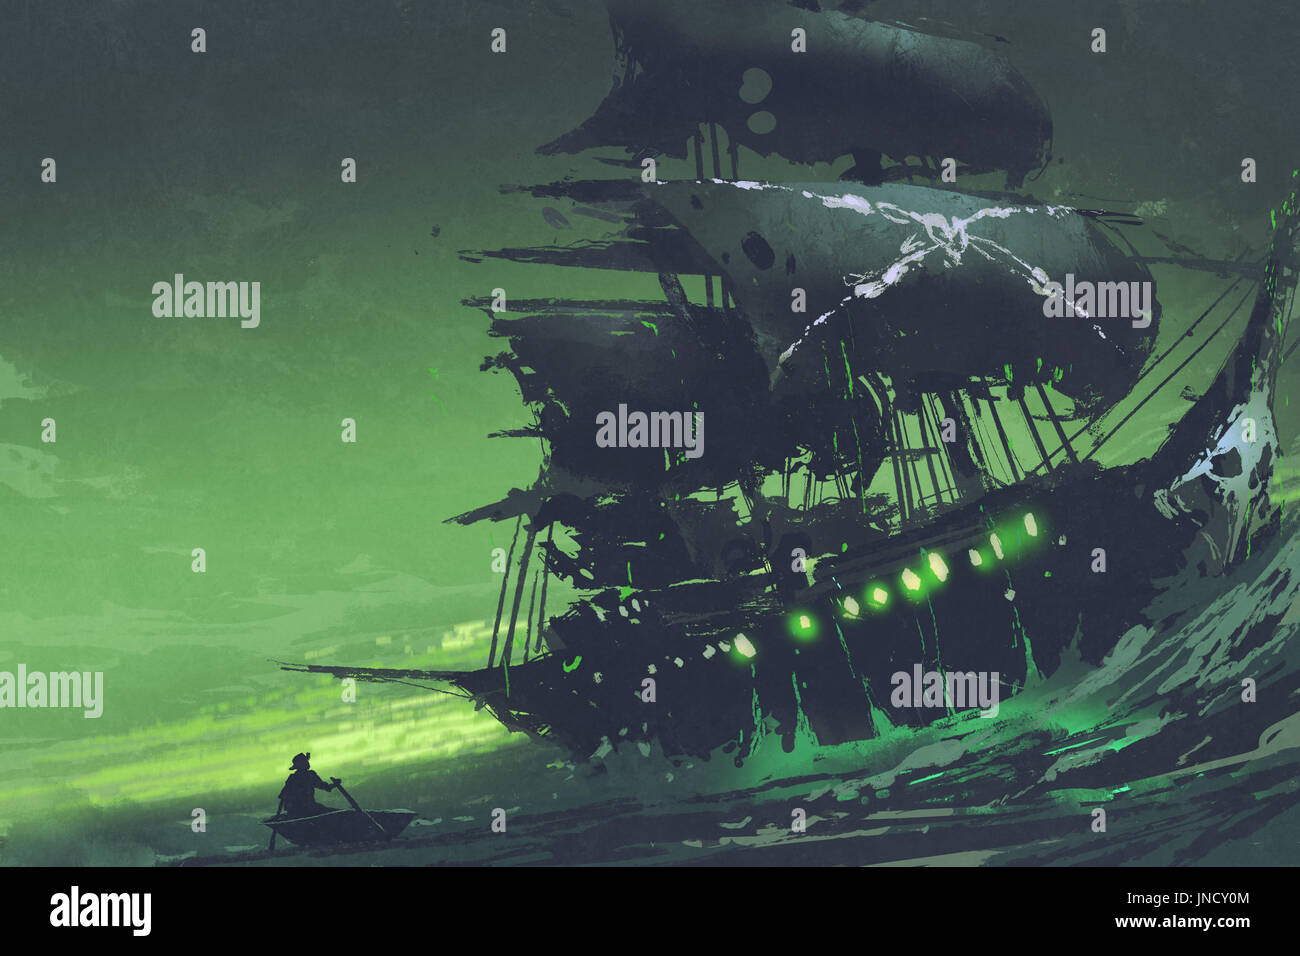 Scène de nuit de ghost pirates les navires dans la mer avec de mystérieux feu vert, Flying Dutchman, style art numérique, illustration peinture Banque D'Images